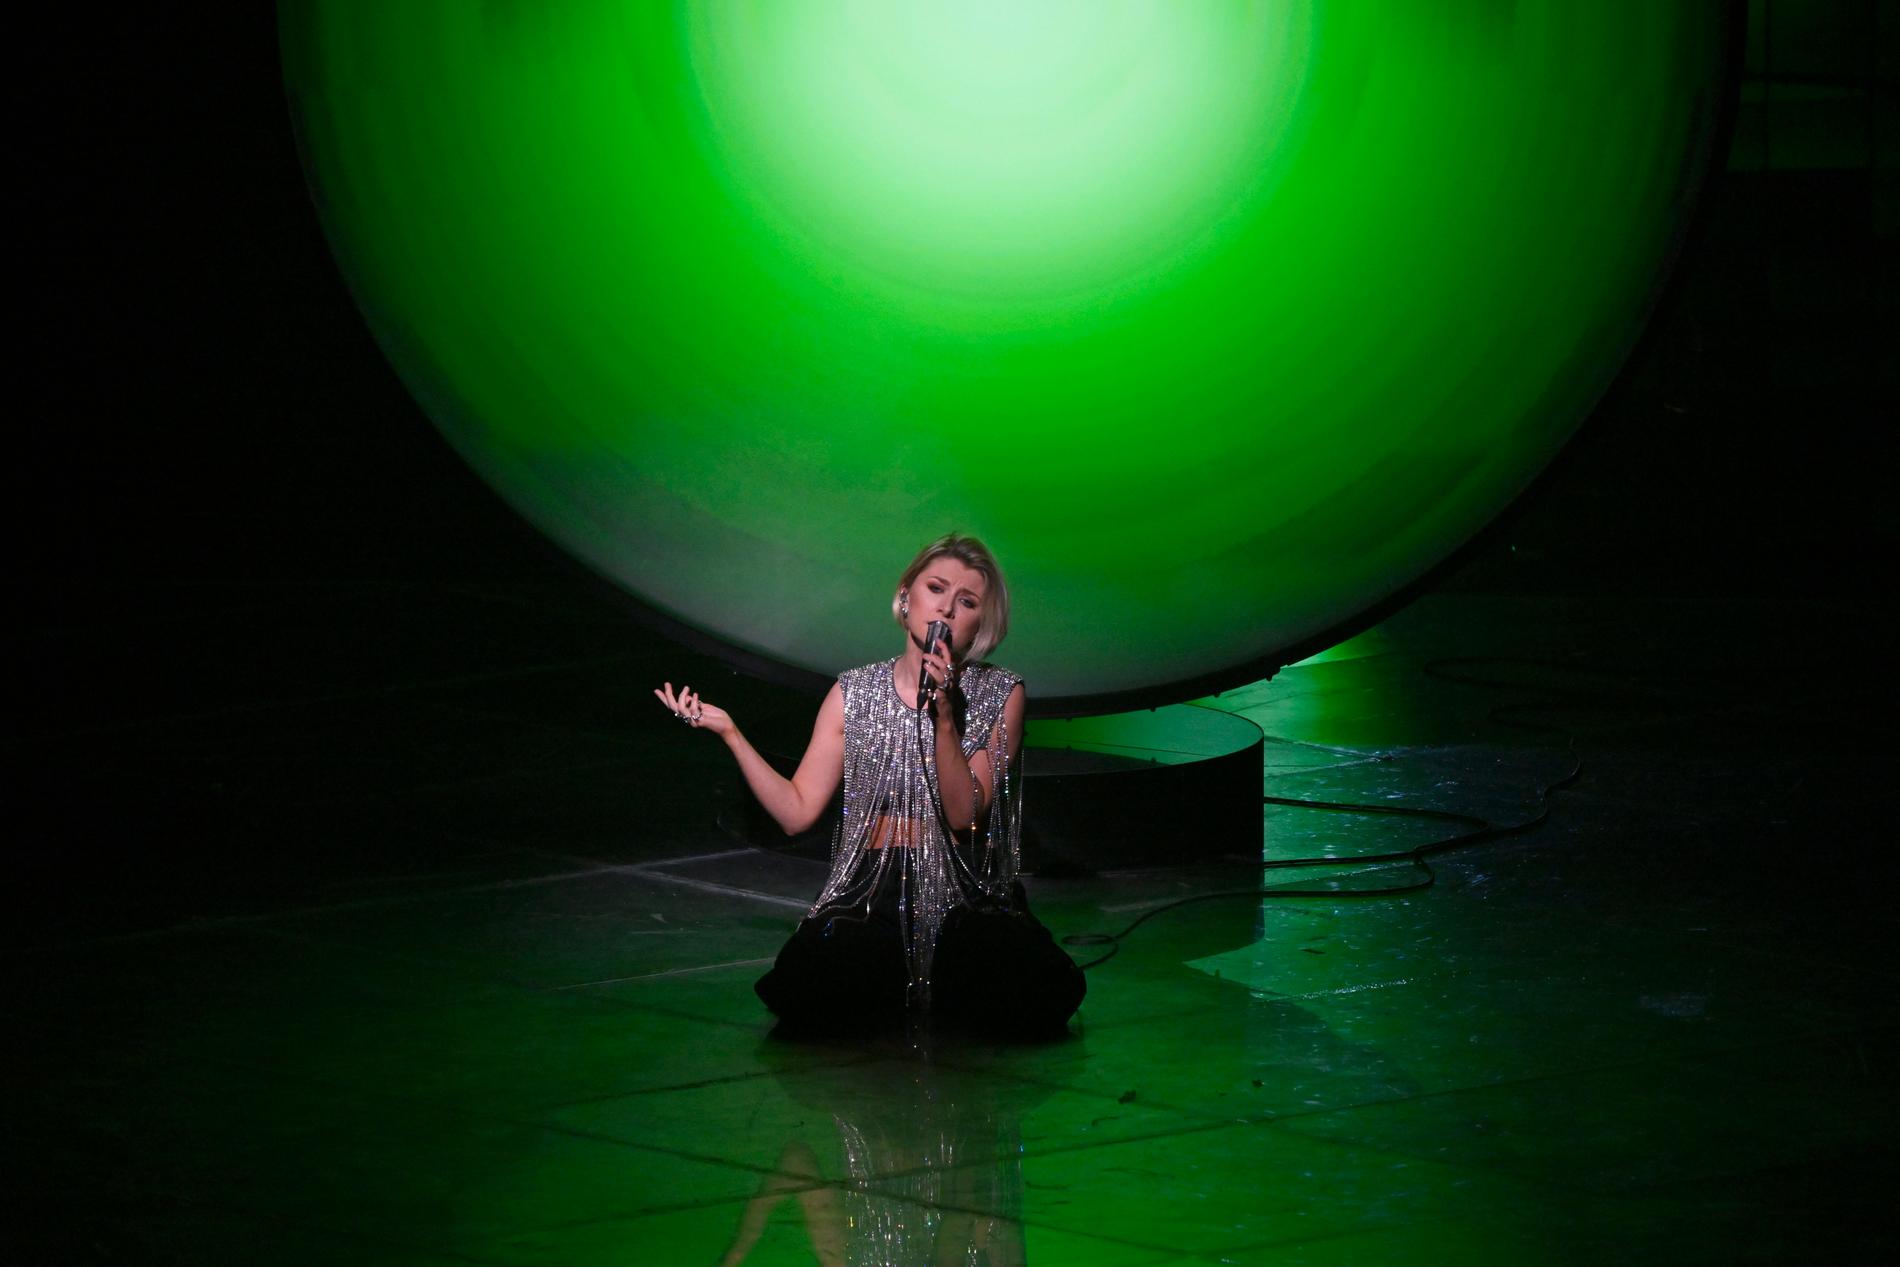 Sveriges Cornelia Jakobs med låten "Hold Me Closer" uppträder på plats nummer 20 i finalen.